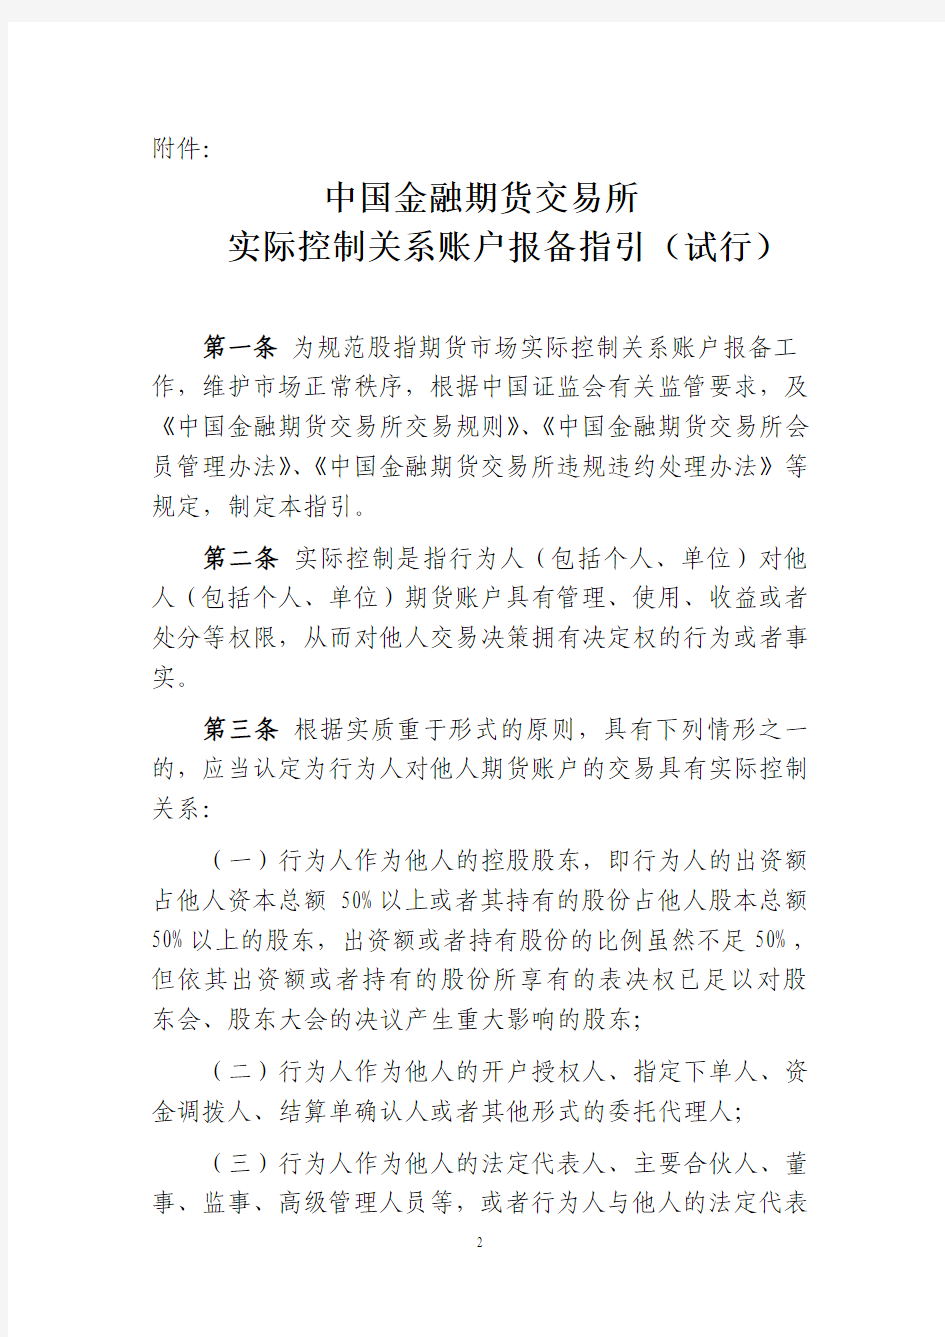 中国金融期货交易所实际控制关系账户报备指引(试行)